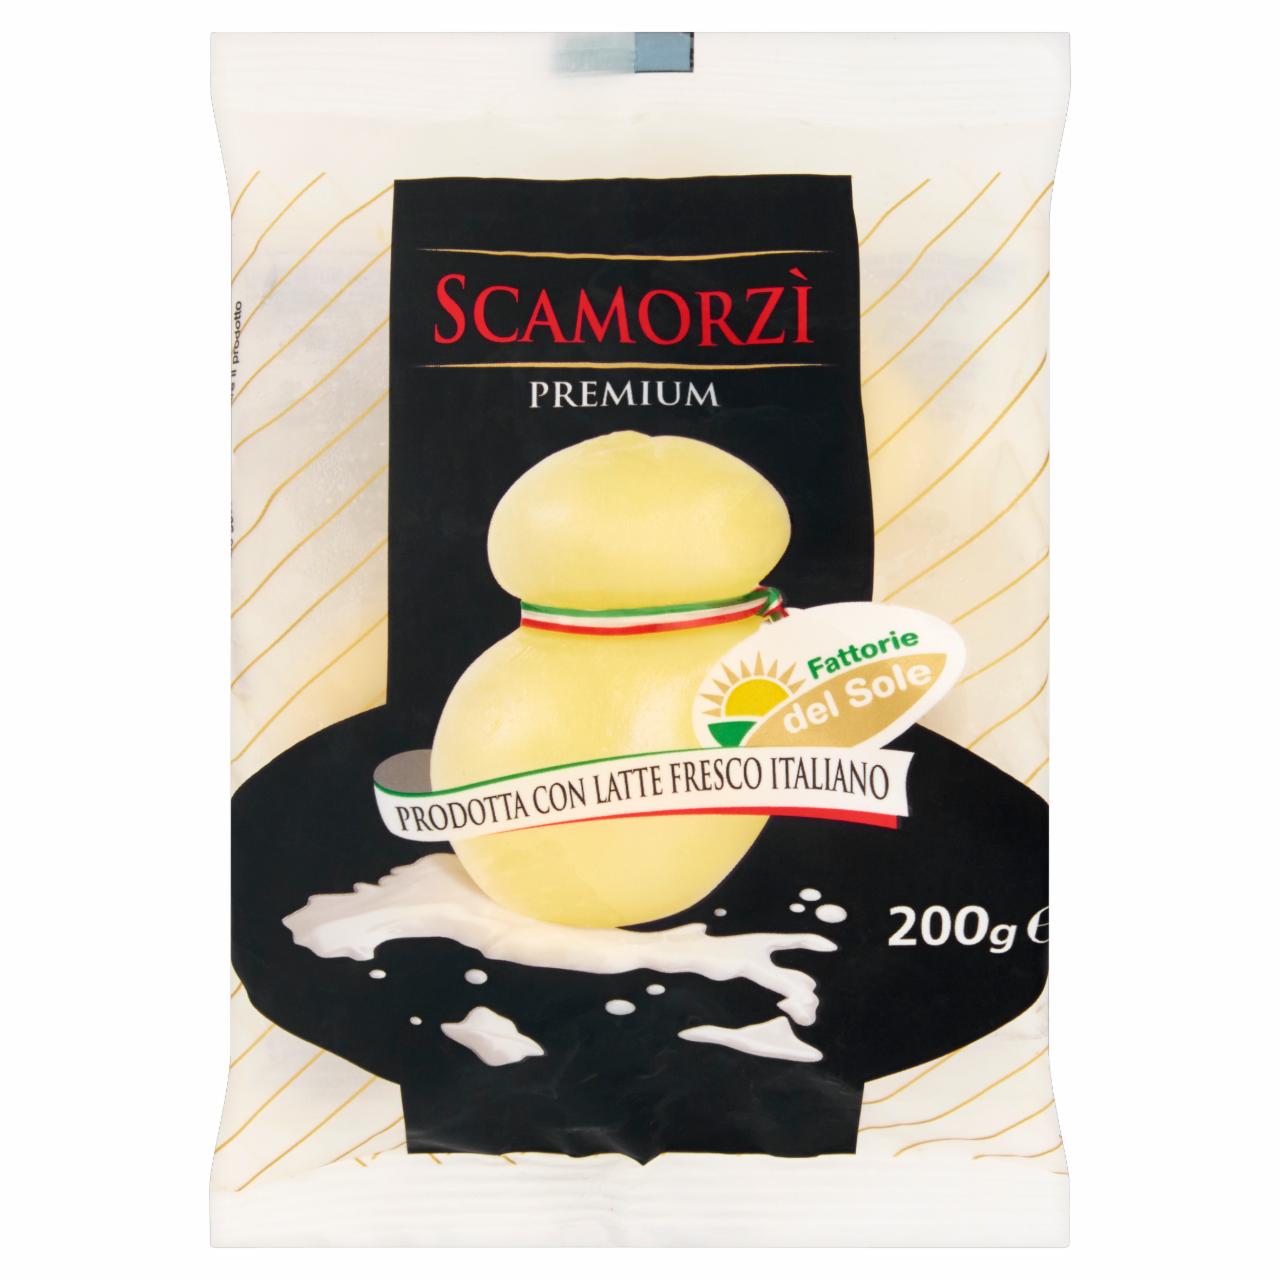 Képek - Scamorzí Premium félzsíros félkemény sajt 200 g